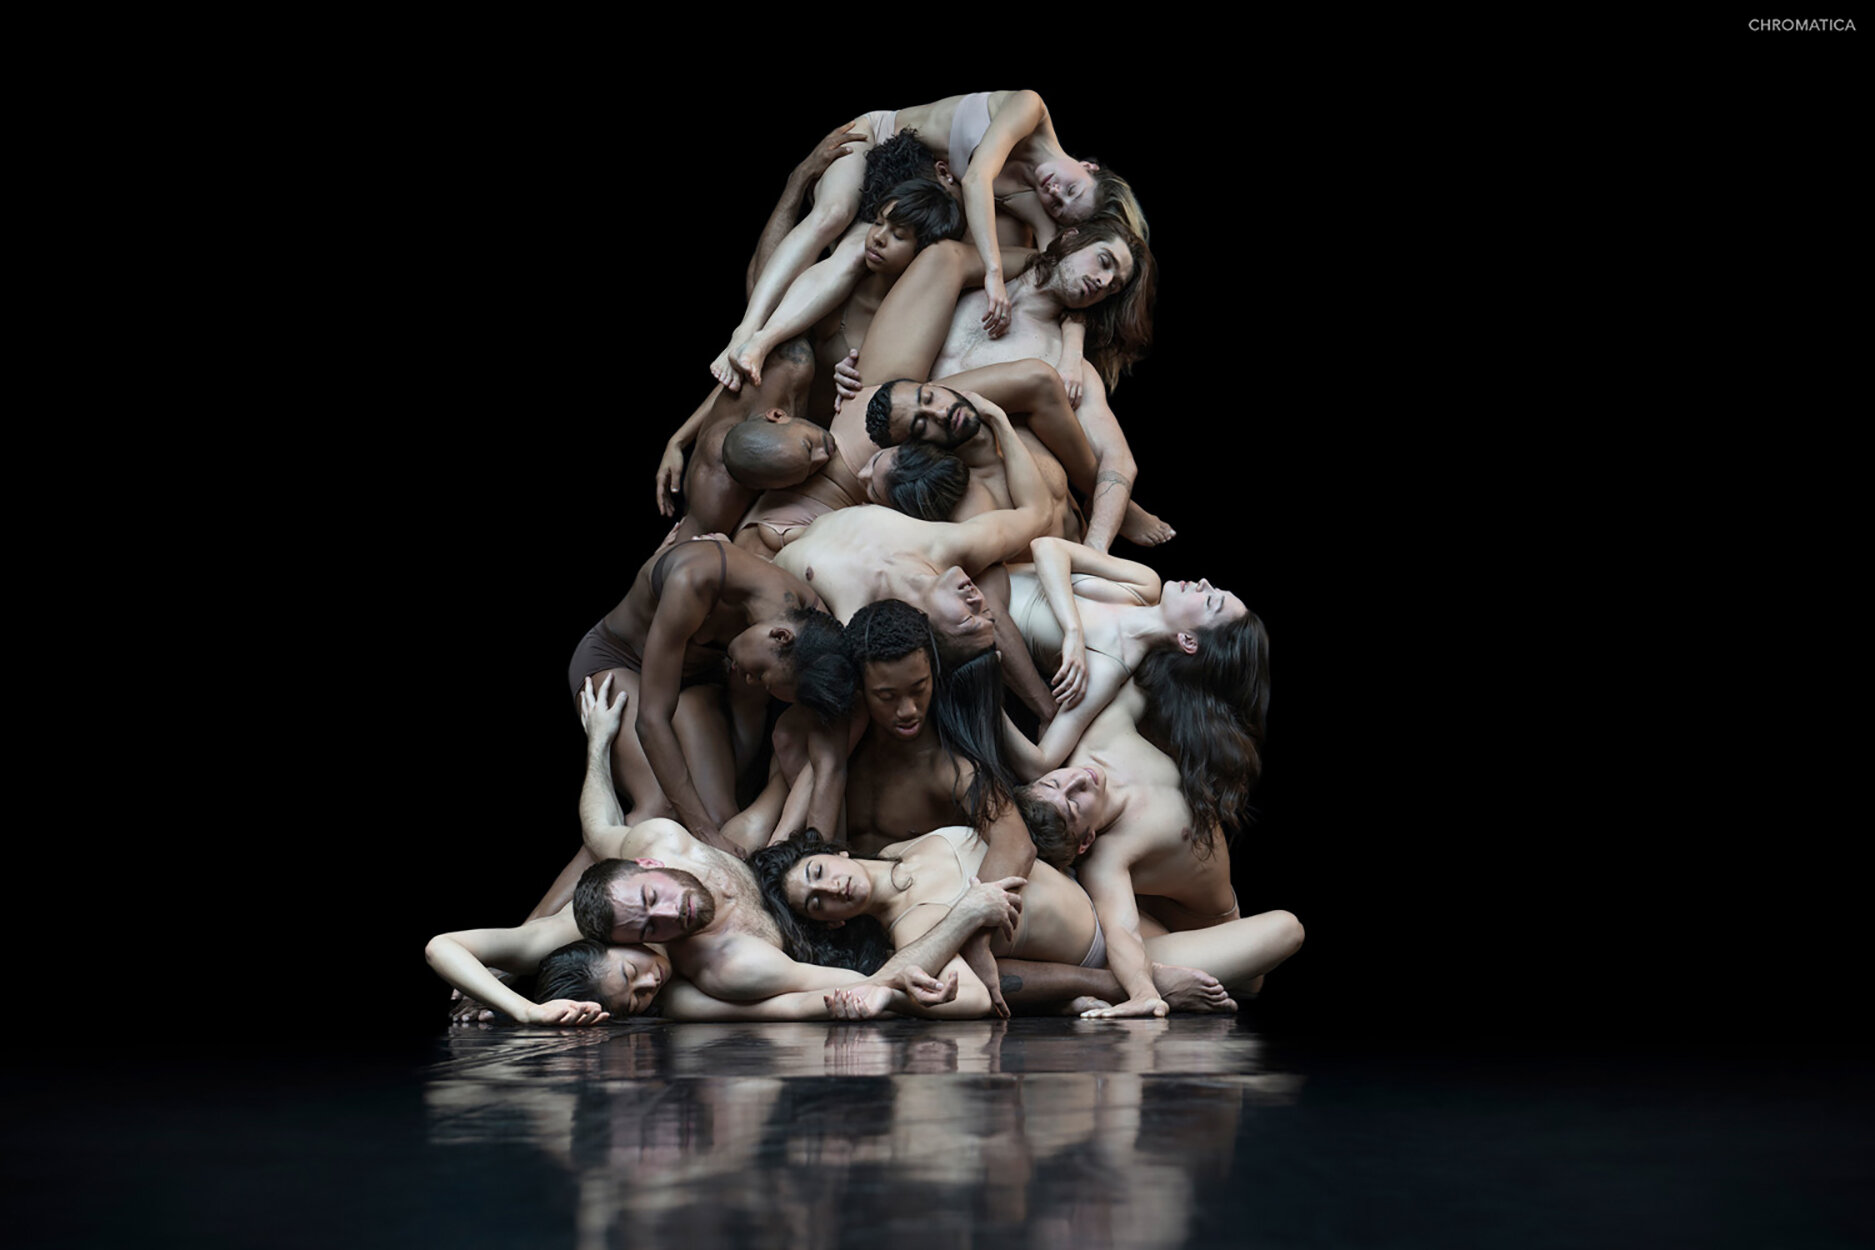  Cedar Lake Contemporary Ballet 2014 